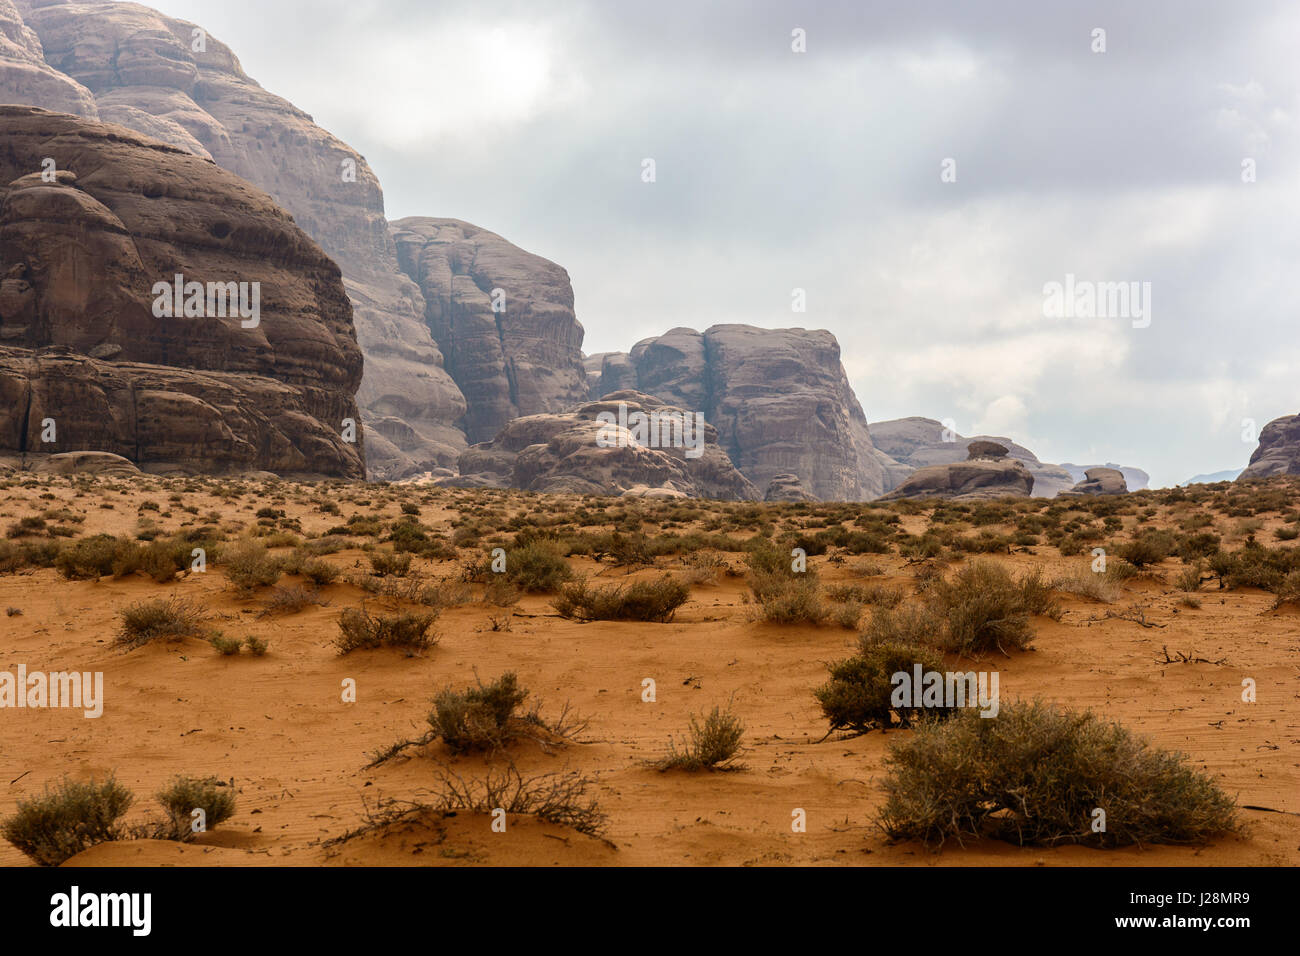 Giordania, Aqaba Gouvernement, Wadi Rum, un deserto altopiano nel sud della Giordania. UNESCO Patrimonio Naturale dell'umanità. Ubicazione del film 'Lawrence d'Arabia' Foto Stock